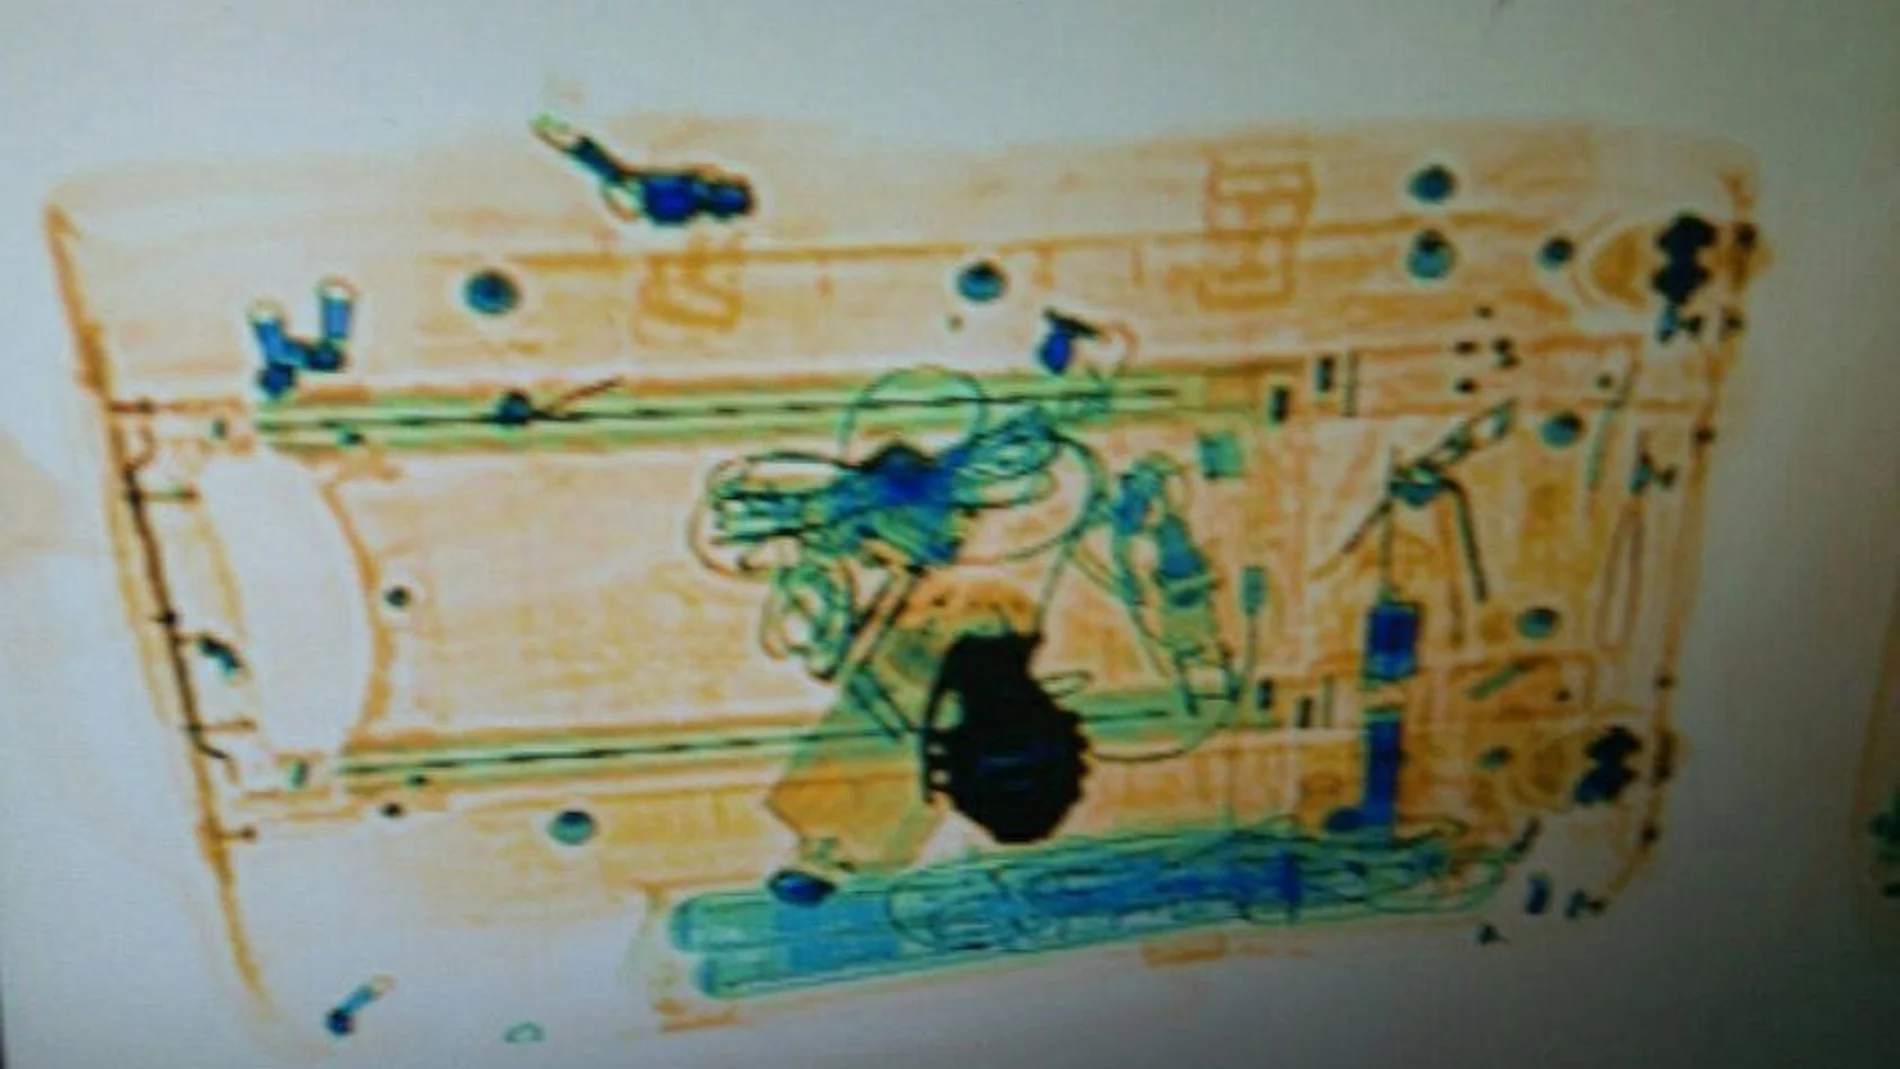 Imagen escaneada del supuesto explosivo que era en realidad la hebilla de un cinturón con forma de granada. EFE/Mossos d'Escuadra